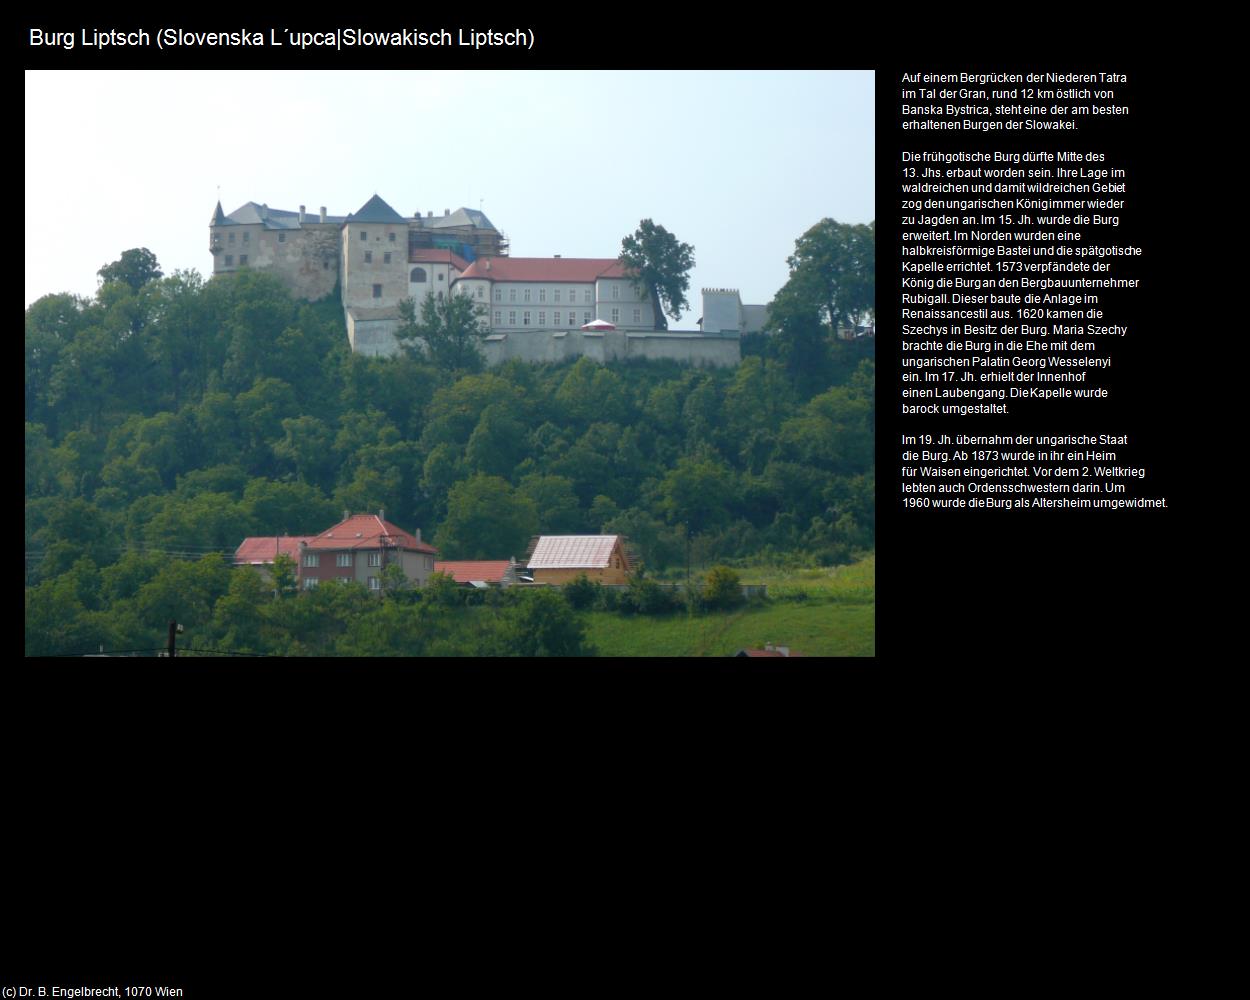 Burg Liptsch (Slovenska L‘upca|Slowakisch Liptsch) in SLOWAKEI